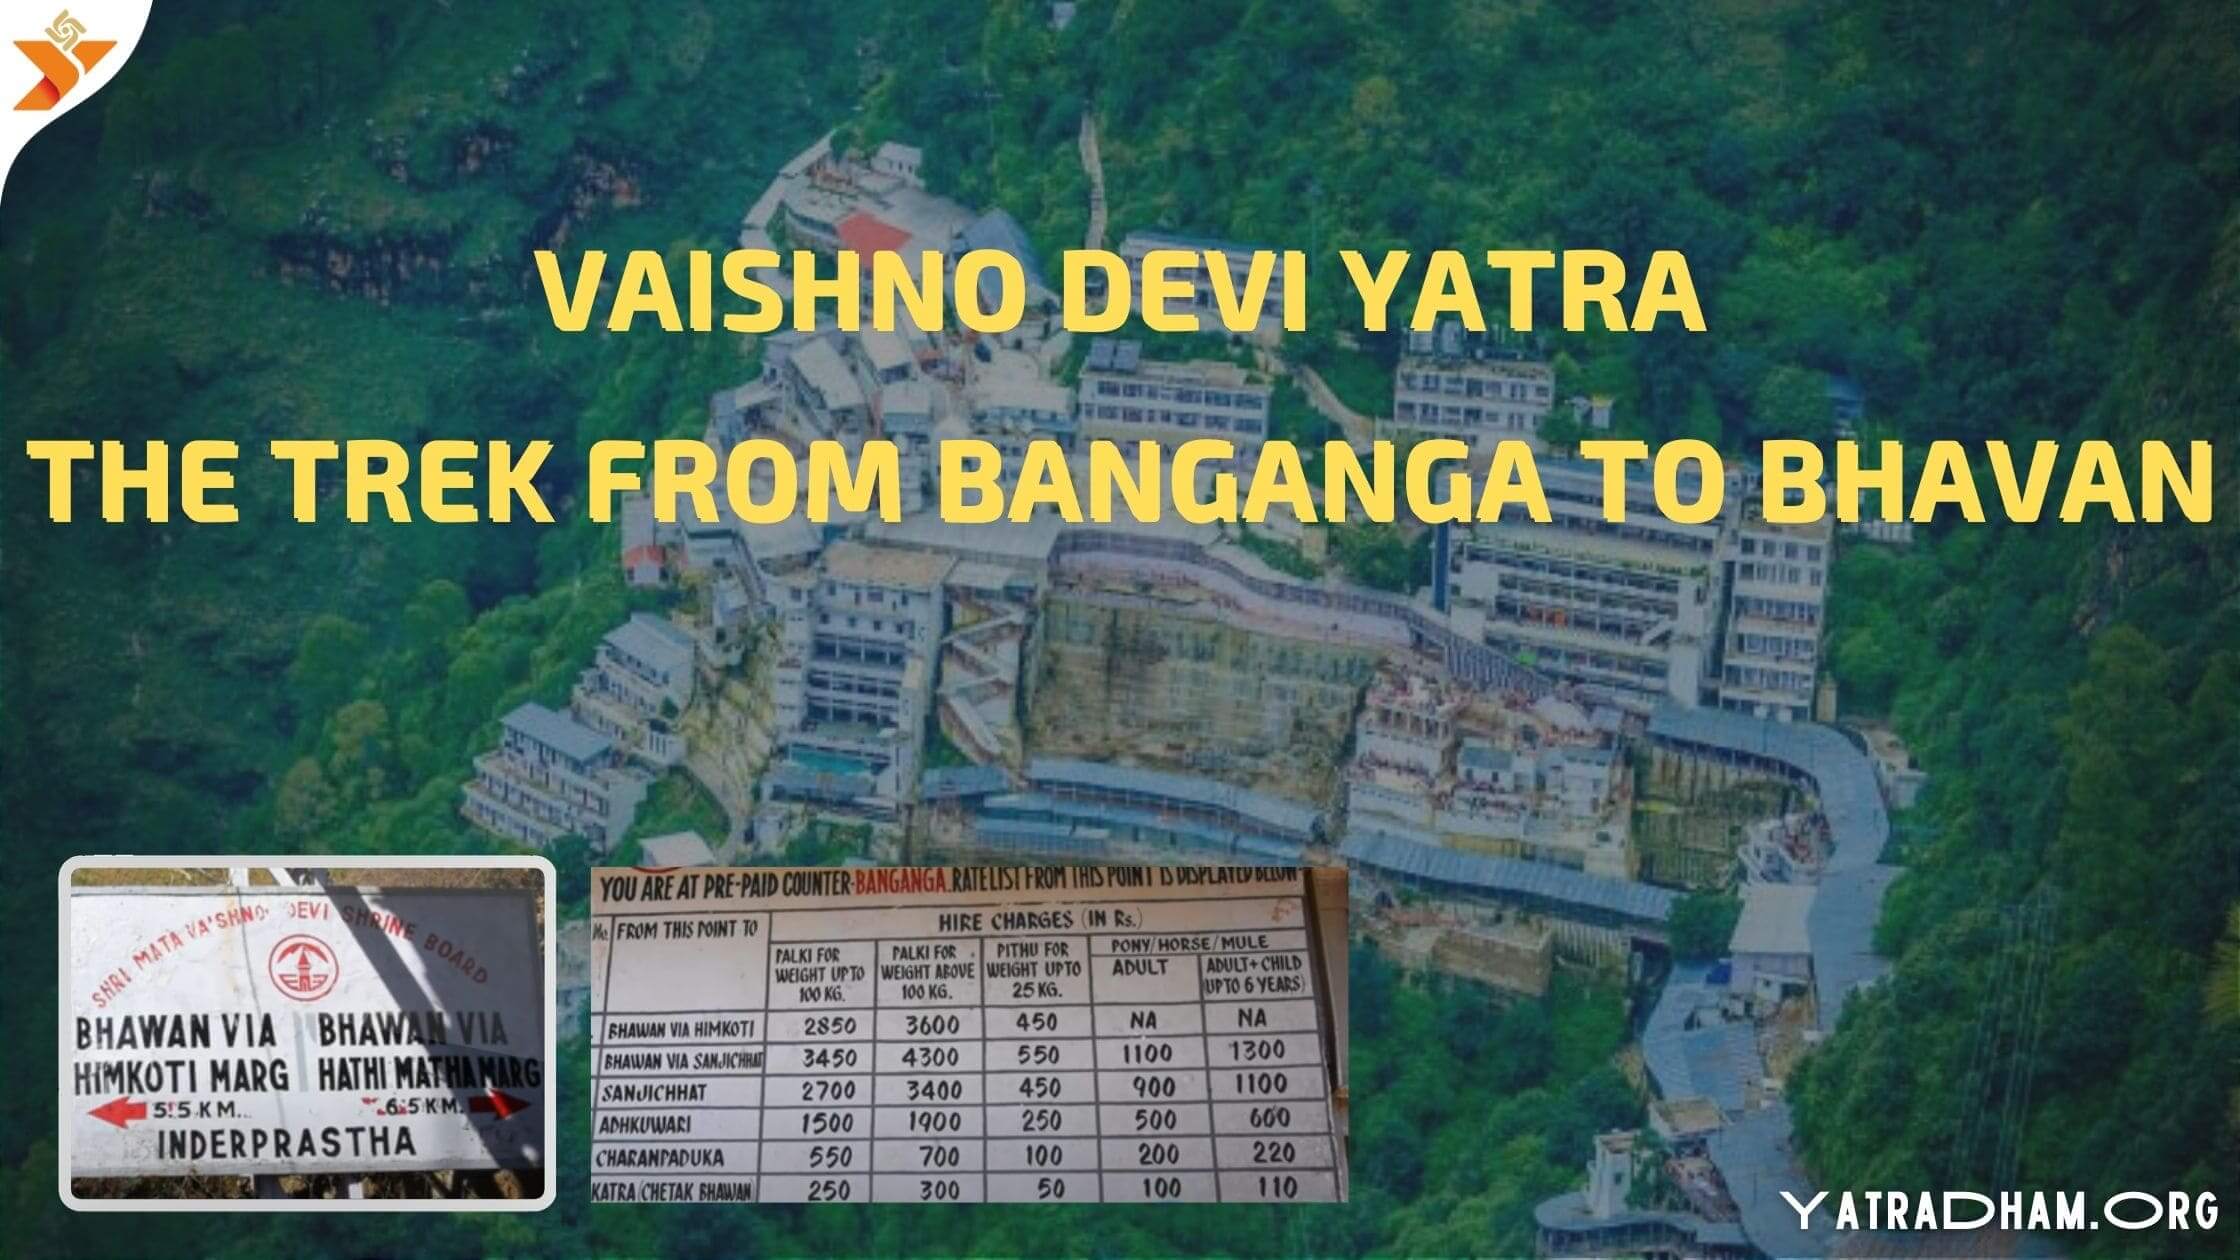 Vaishno Devi Yatra the trek from Banganga to Bhawan